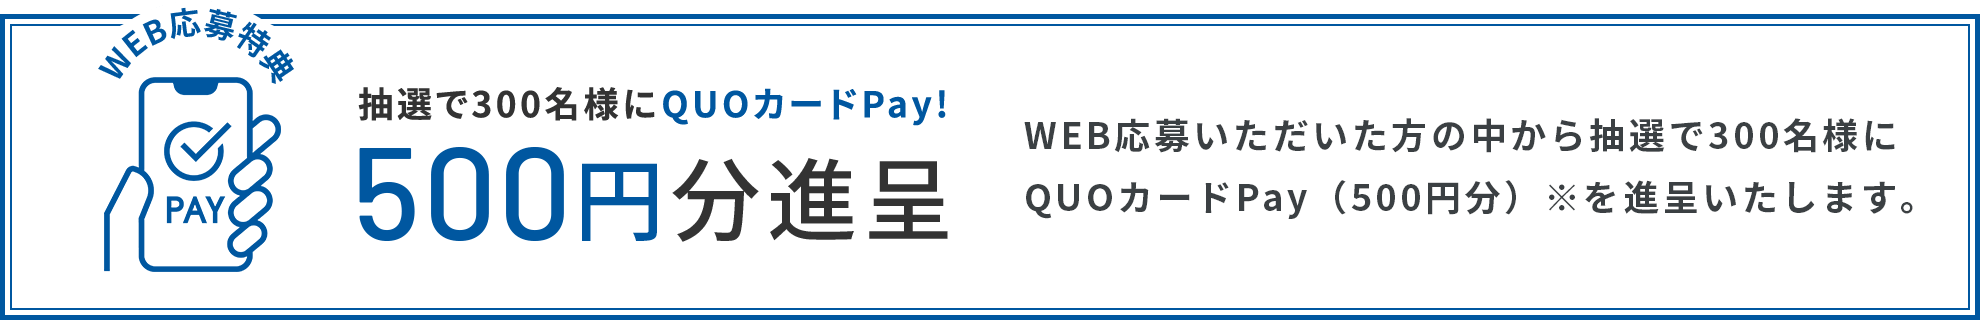 WEB応募いただいた方の中から抽選で300名様に QUOカードPay（500円分）※を進呈いたします。